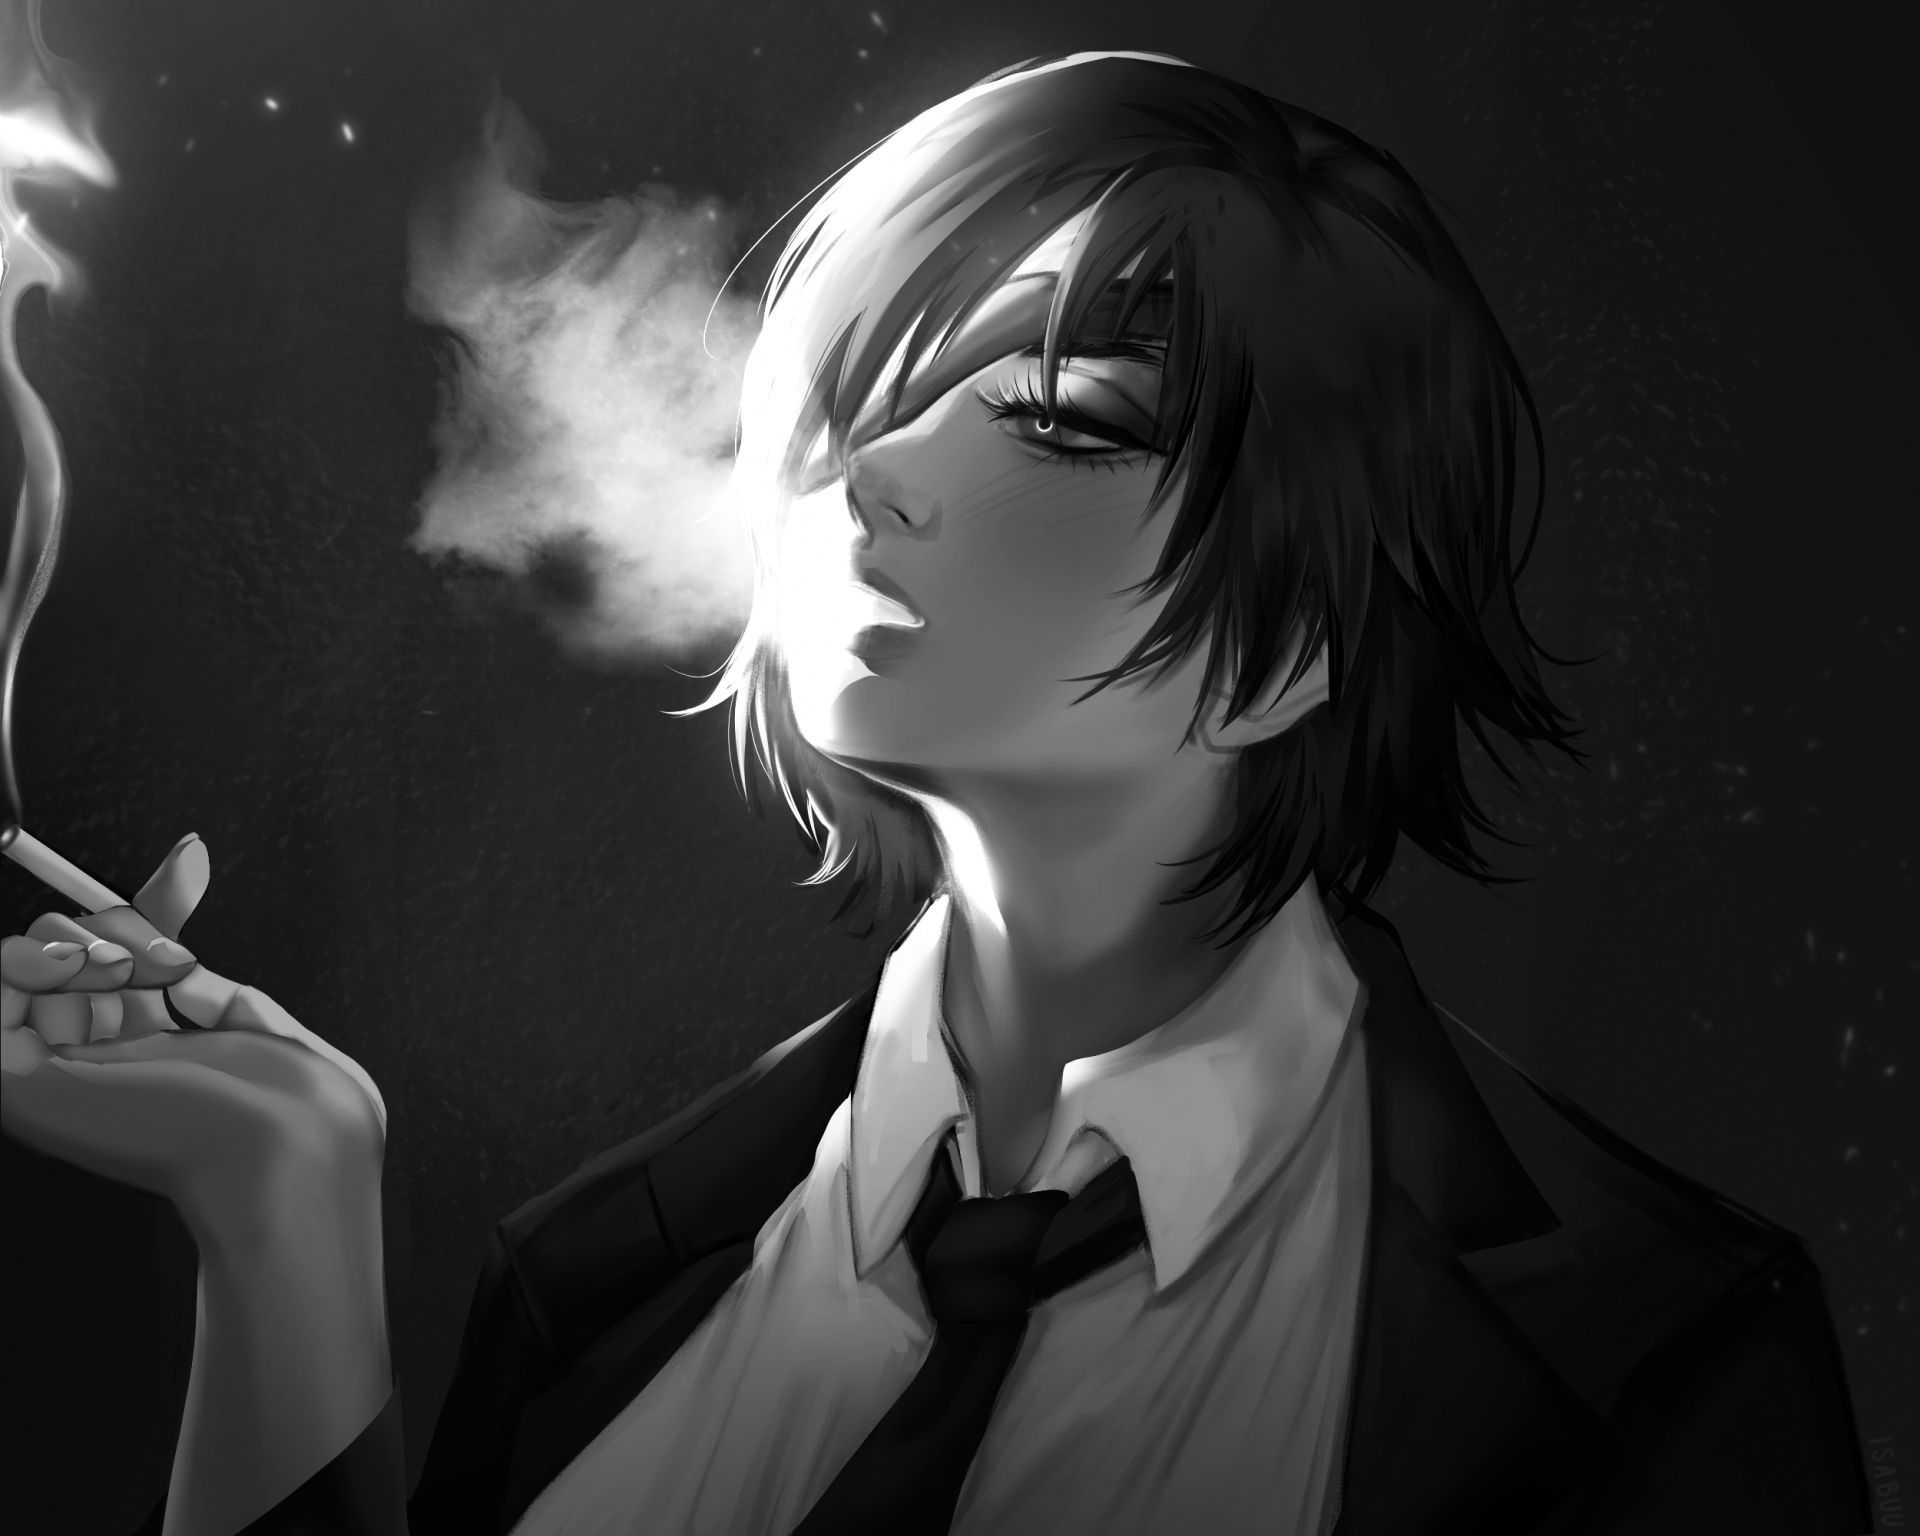 HD wallpaper: anime, 1920x1080, smoke, man, boy smoking, HD | Wallpaper  Flare